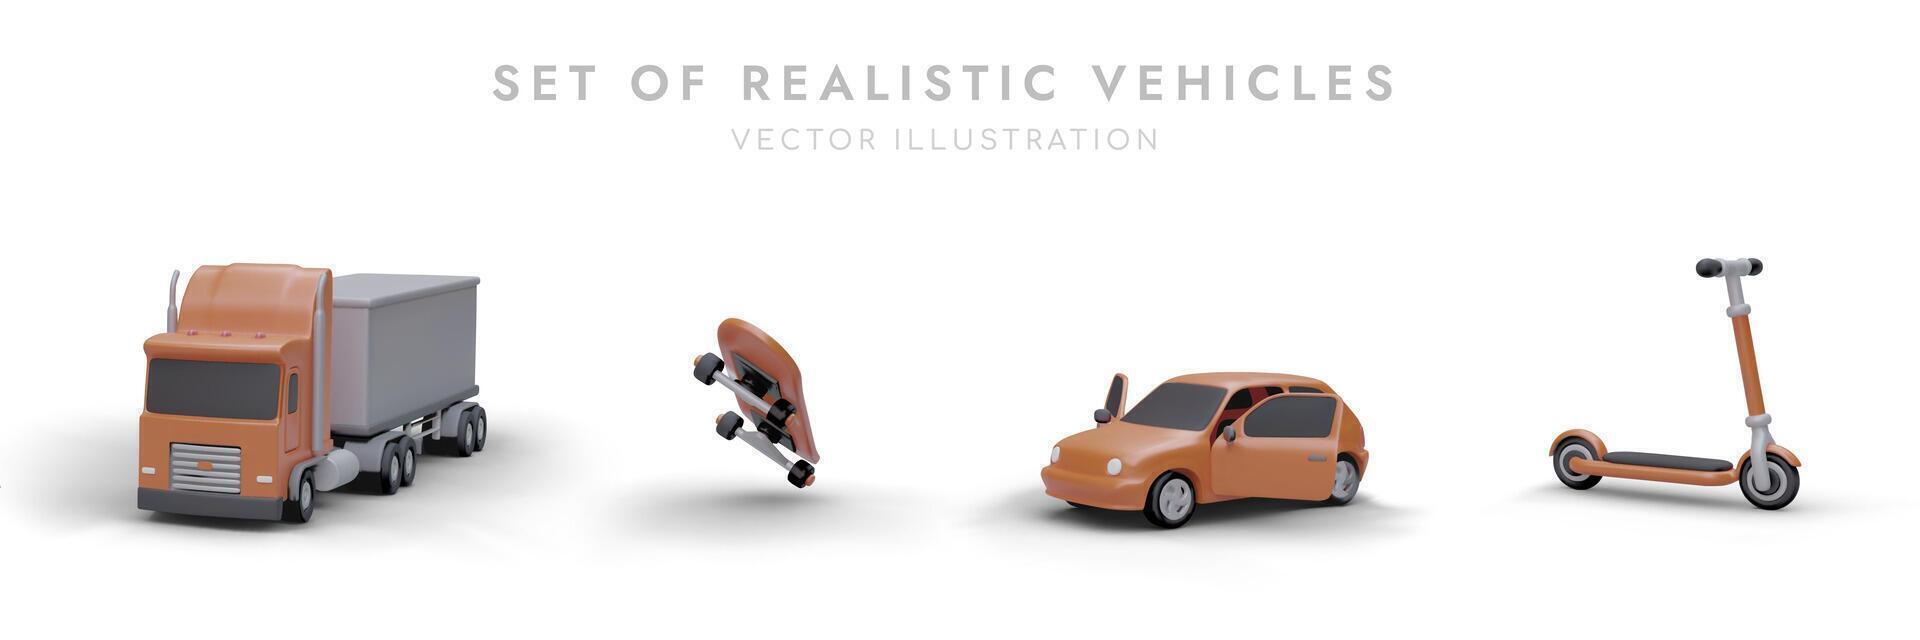 verzameling van divers vervoer faciliteiten in tekenfilm stijl. oranje vrachtwagen, scooter, skateboard, auto vector